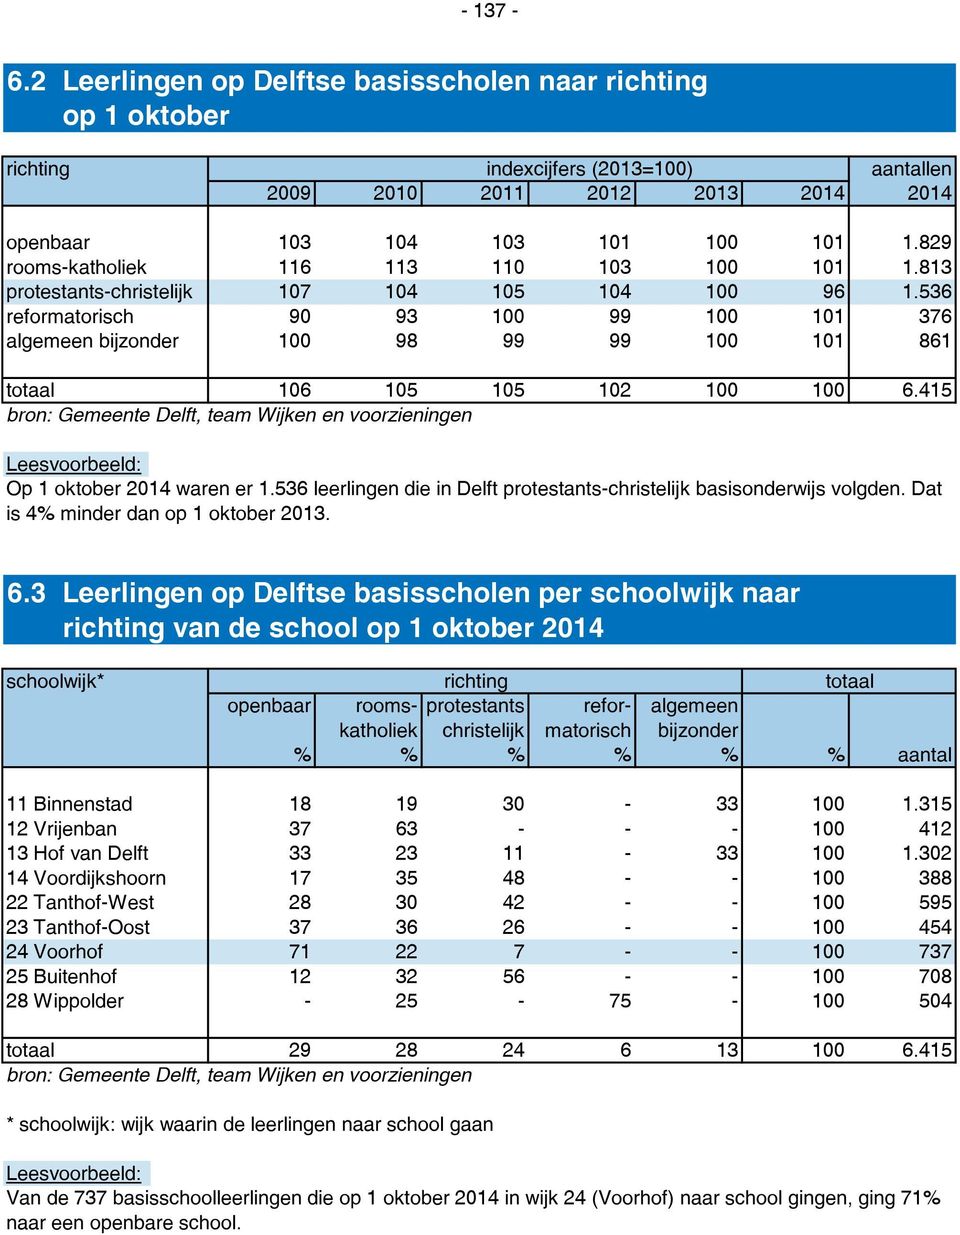 415 bron: Gemeente Delft, team Wijken en voorzieningen Op 1 oktober 2014 waren er 1.536 leerlingen die in Delft protestants-christelijk basisonderwijs volgden. Dat is 4% minder dan op 1 oktober 2013.